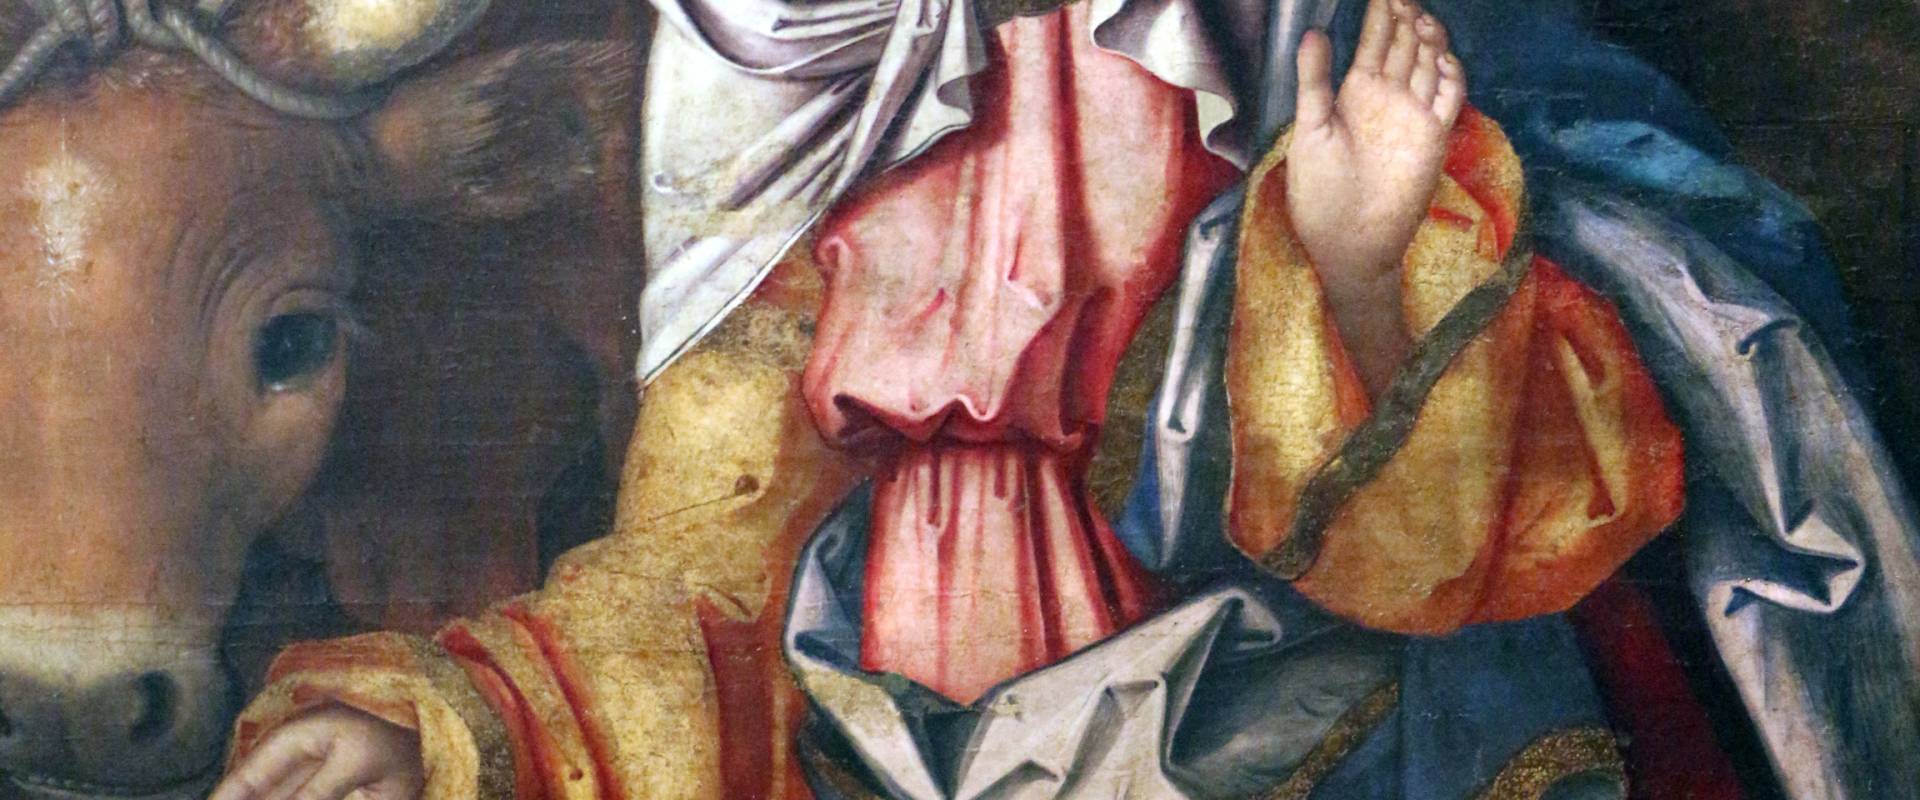 Francesco zaganelli da cotignola, adorazione dei pastori coi ss. bonaventura e girolamo, 1520-30 ca. 08 photo by Sailko